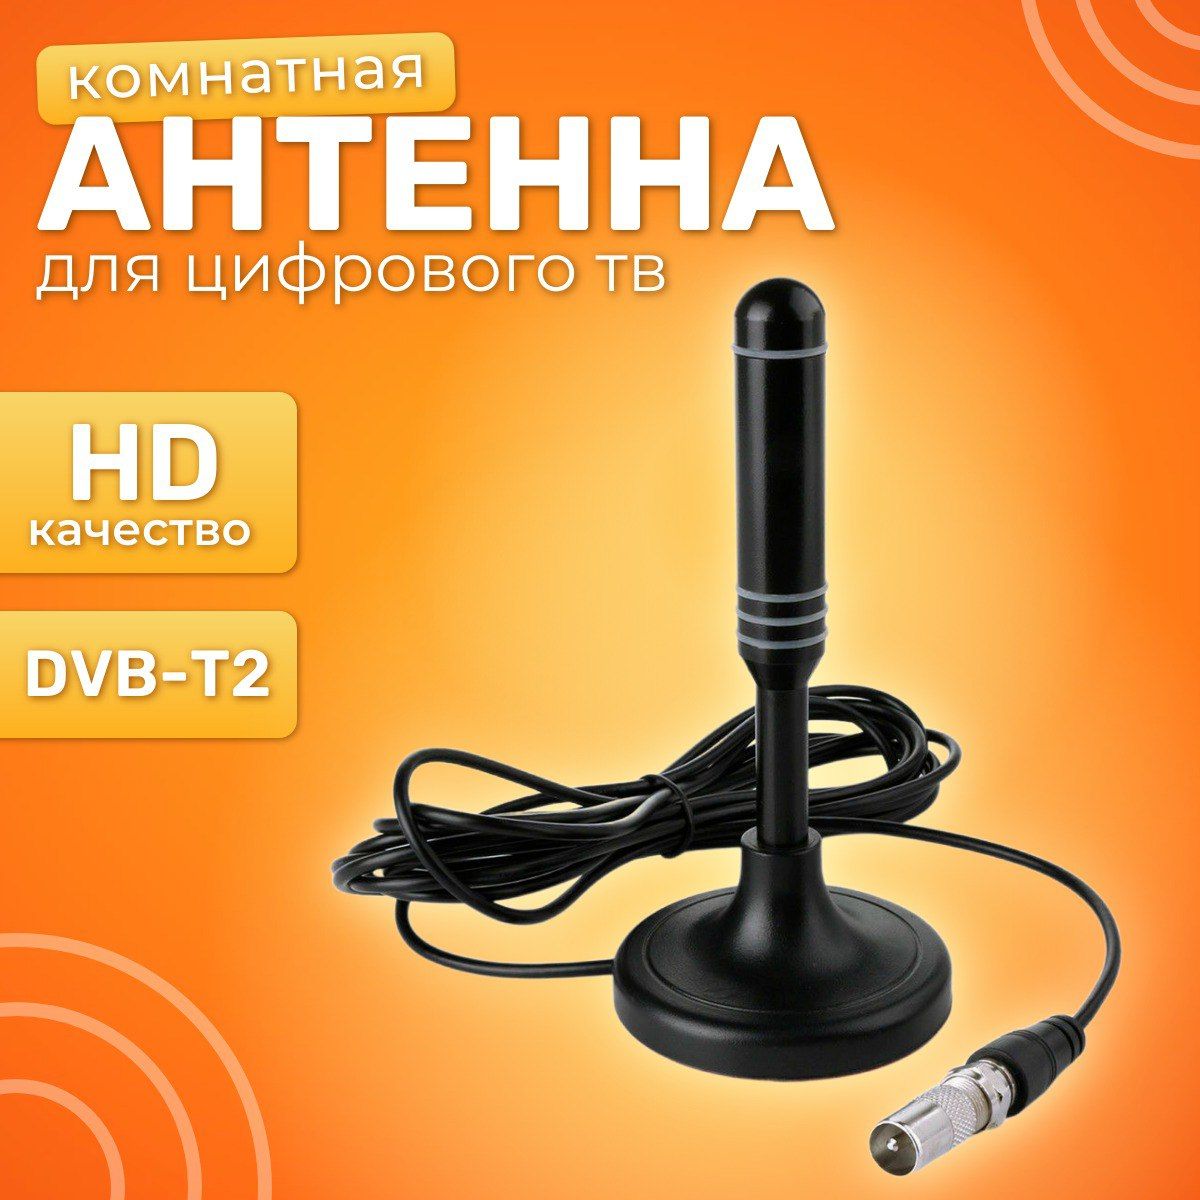 ТелевизионнаяантеннаHDTVTVFlatHD-компактная,мощнаяцифроваяТВантеннадлякачественногоцифровоготелевидения